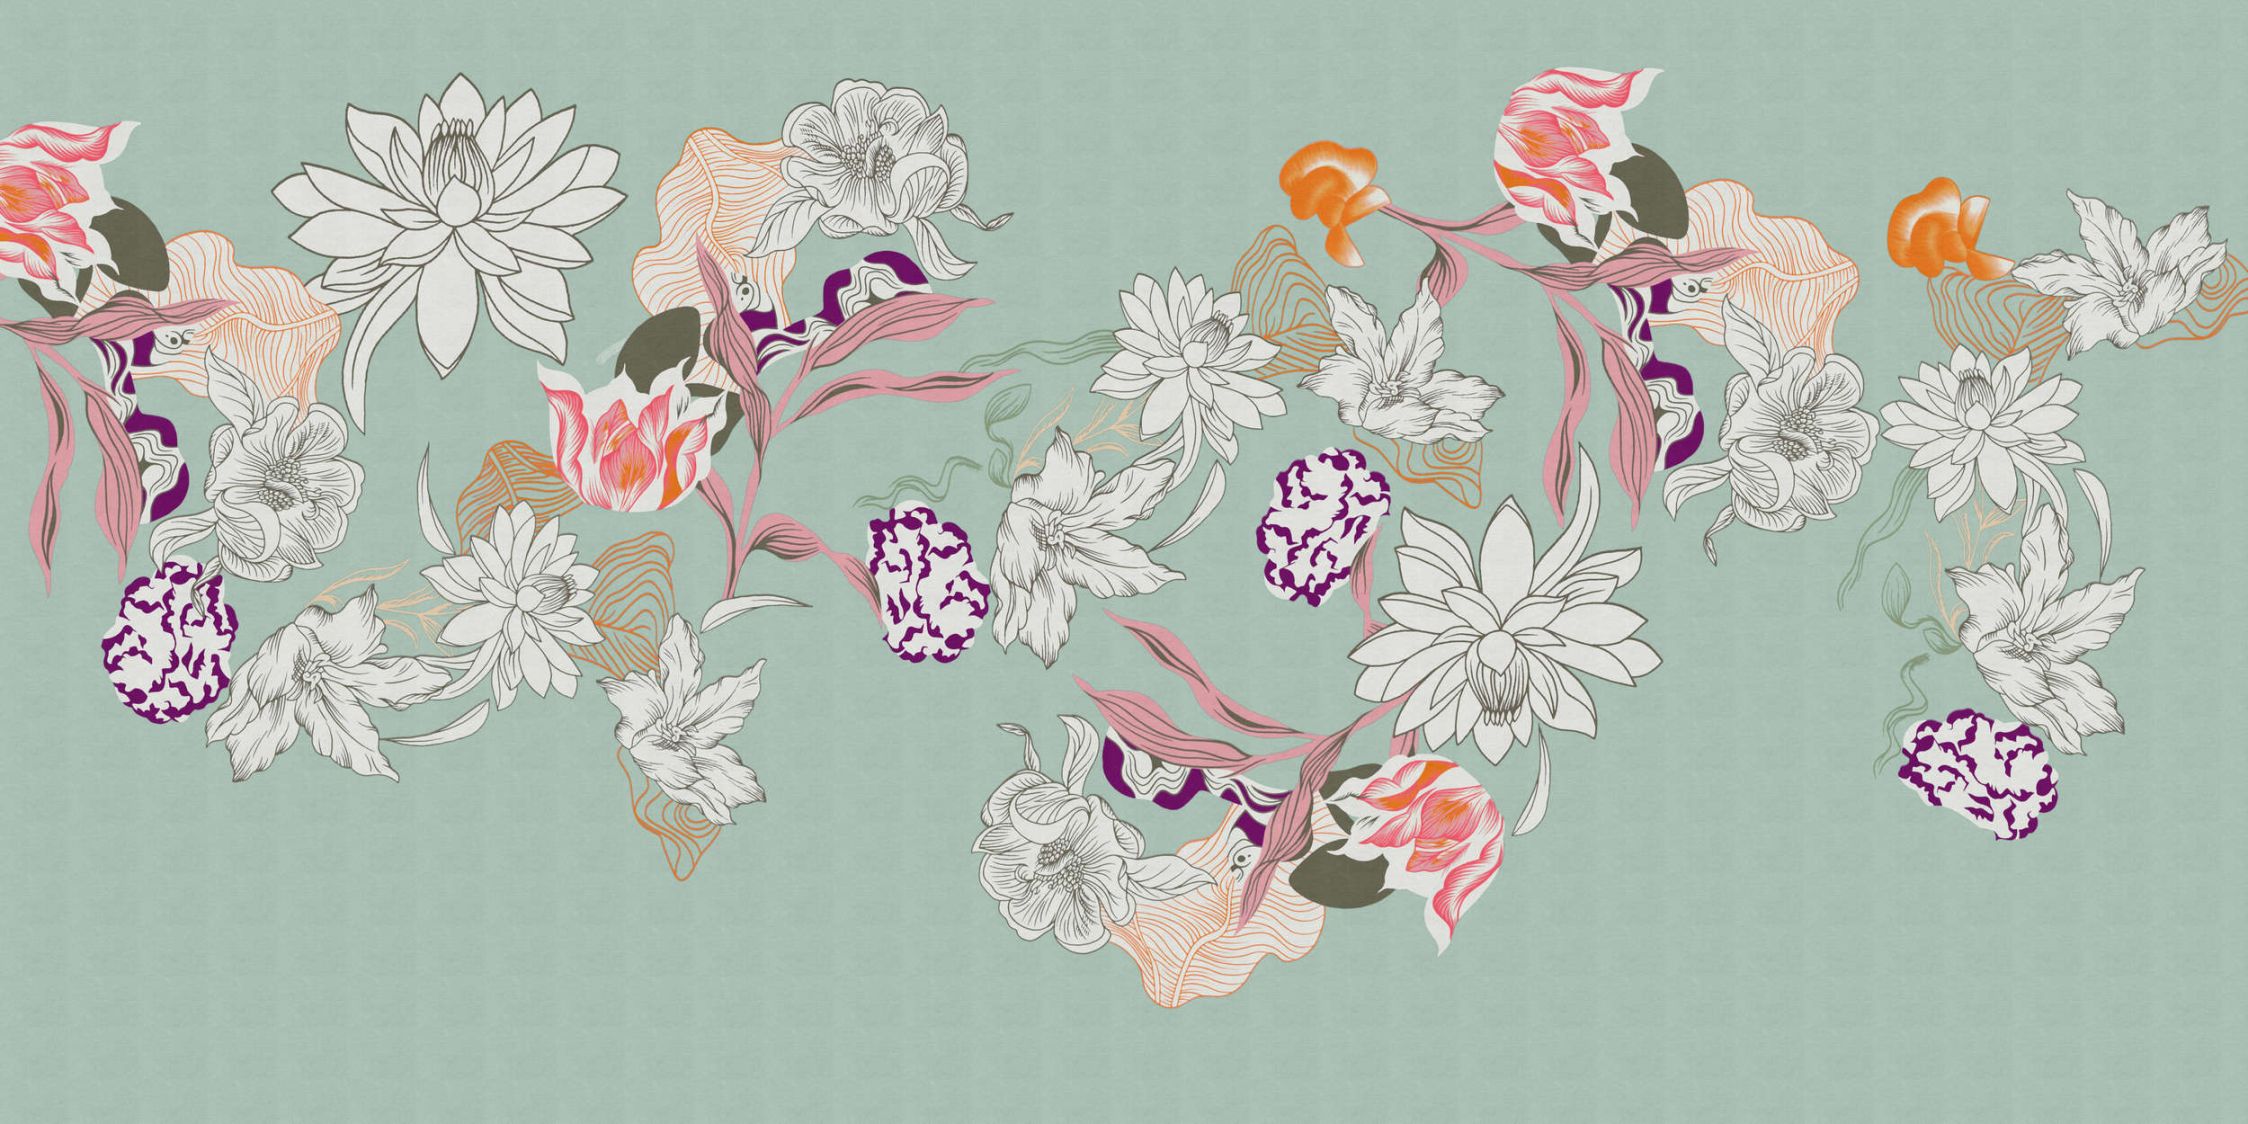             Digital behang »botany 1« - Abstracte bloemmotieven met oranje accenten tegen een subtiele linnen textuur - Gladde, licht parelmoerachtige non-woven stof
        